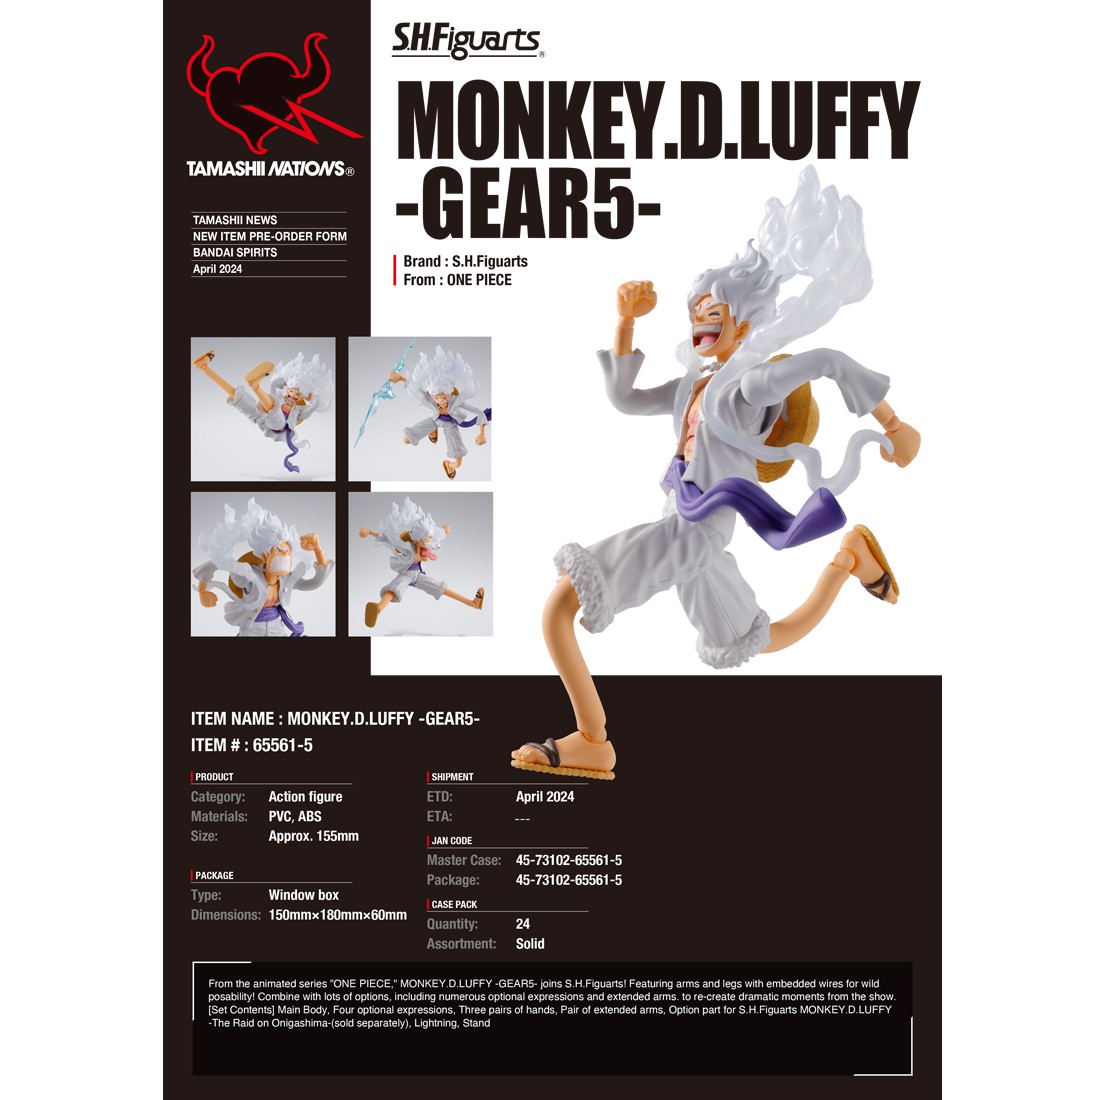 S.H.Figuarts Monkey.D.Luffy GEAR 5